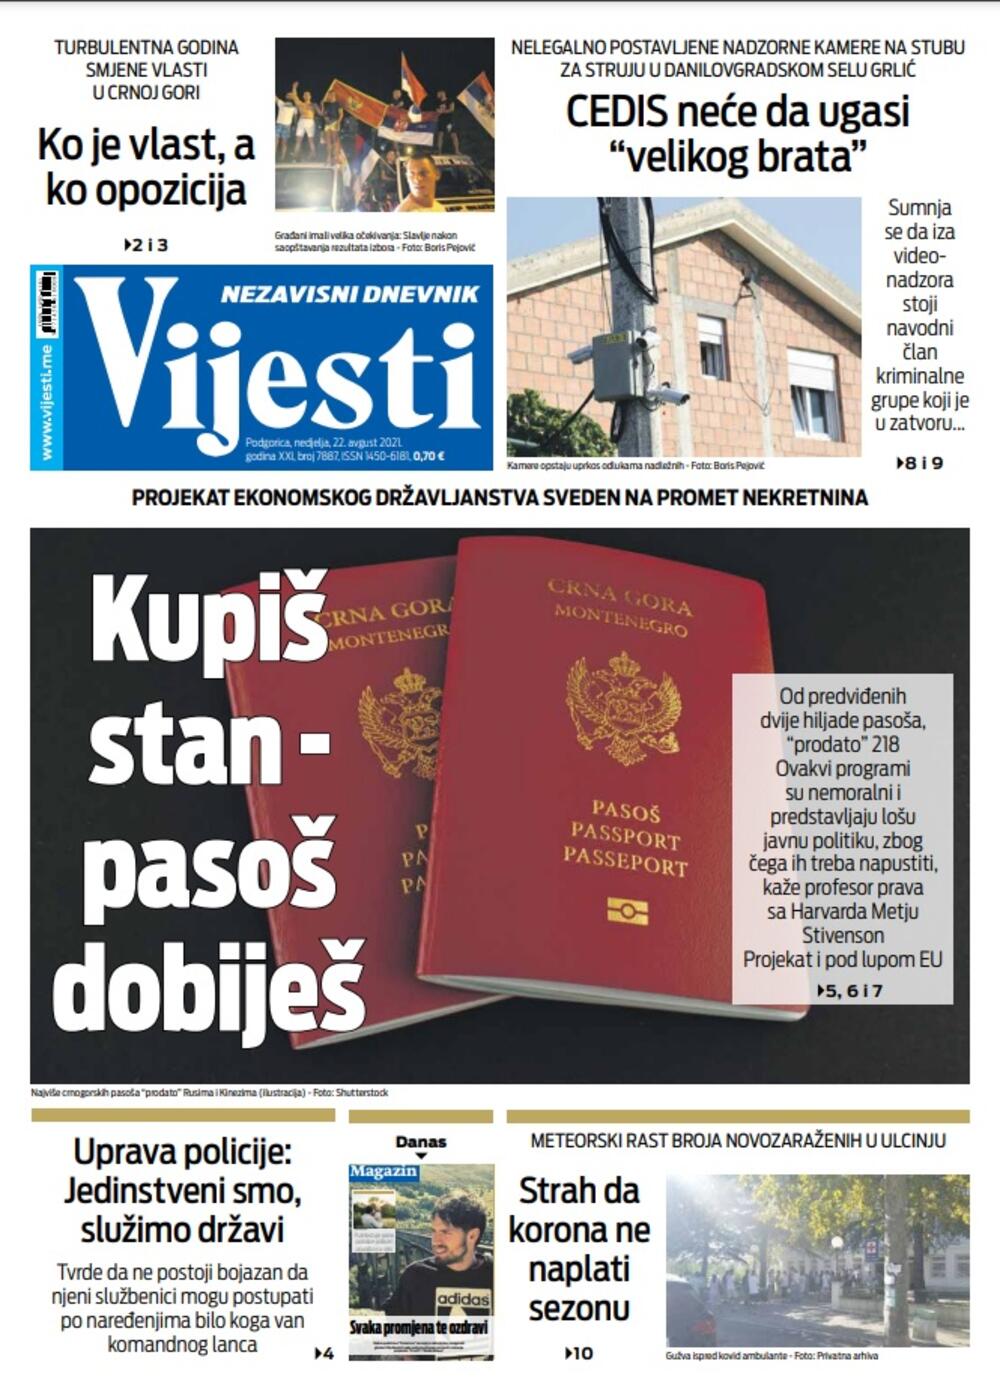 Naslovna strana "Vijesti" za 22. avgust 2021. godine, Foto: Vijesti